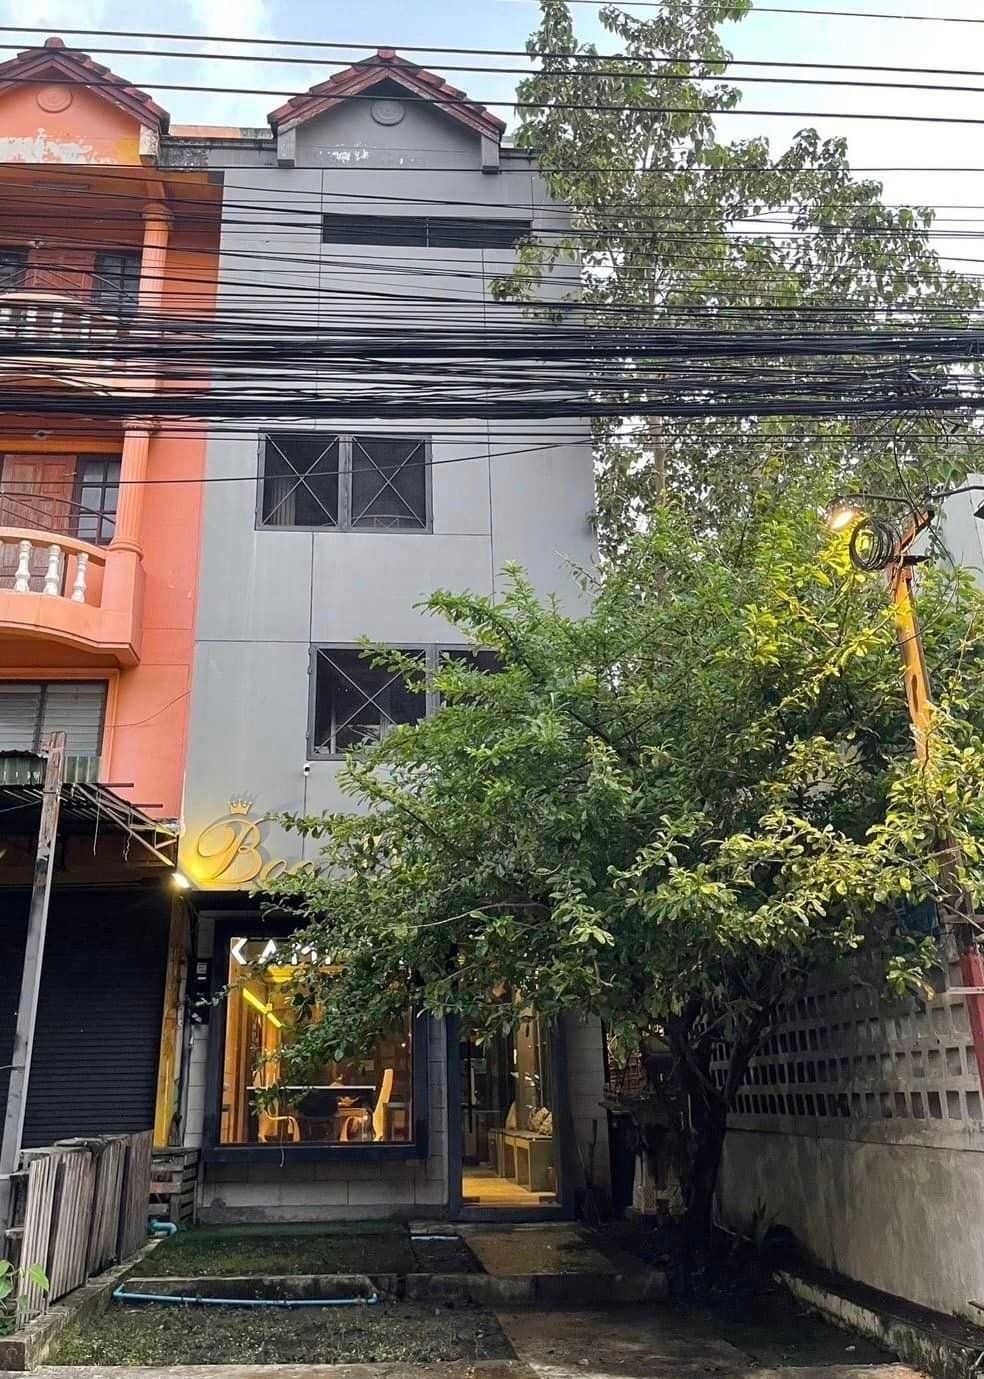 Kampor Hostel Chiangmai 联排别墅出租/出售 144平米 出租30,000泰铢/月，出售75万泰铢